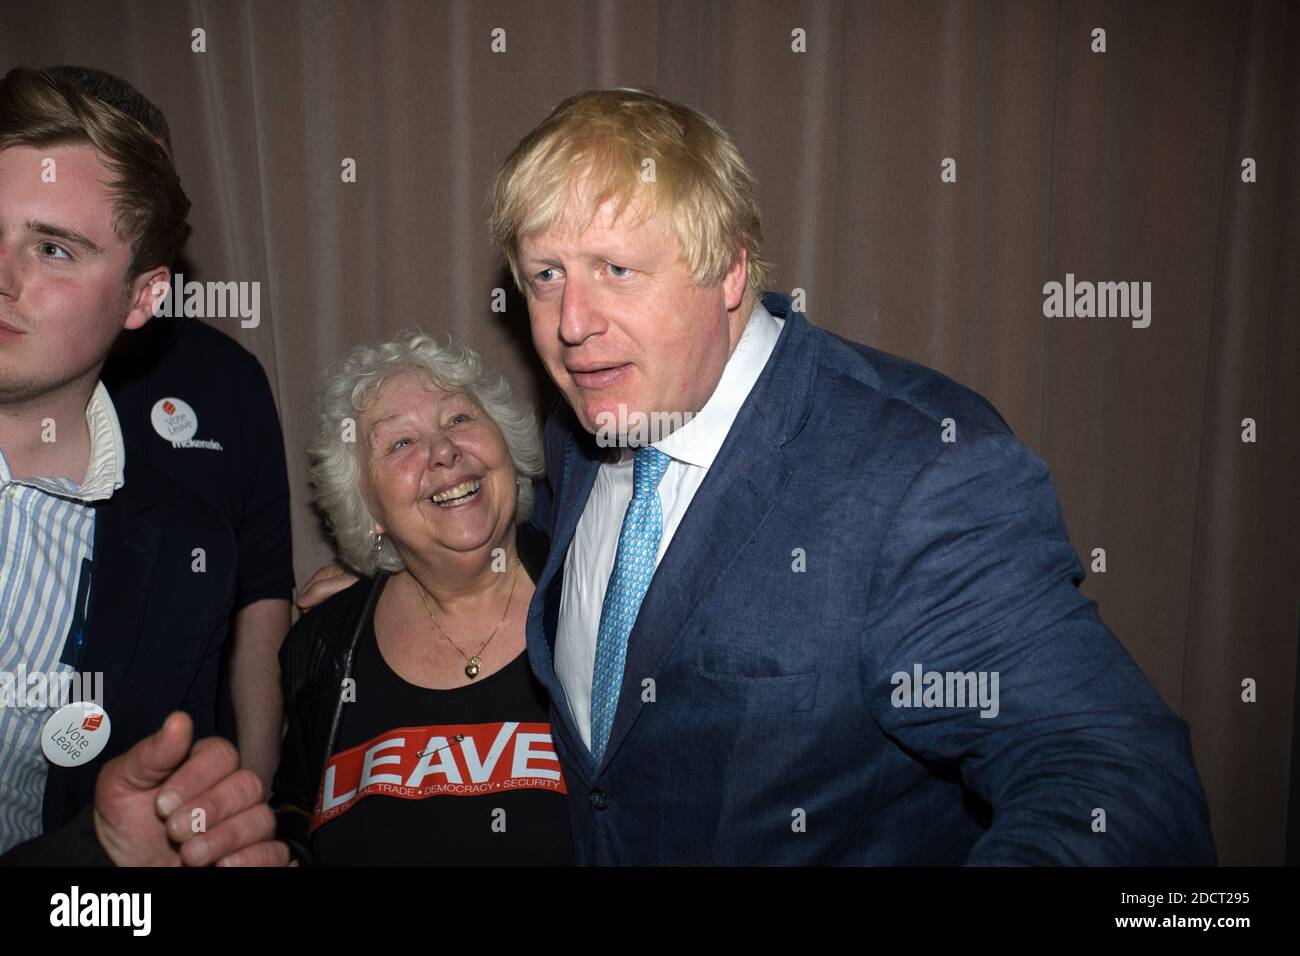 Boris Johnson, a vu s’exprimer lors d’un rallye du congé de vote en 2016, lors d’un rallye du congé de vote à Forman’s Fish Island, dans l’est de Londres Banque D'Images